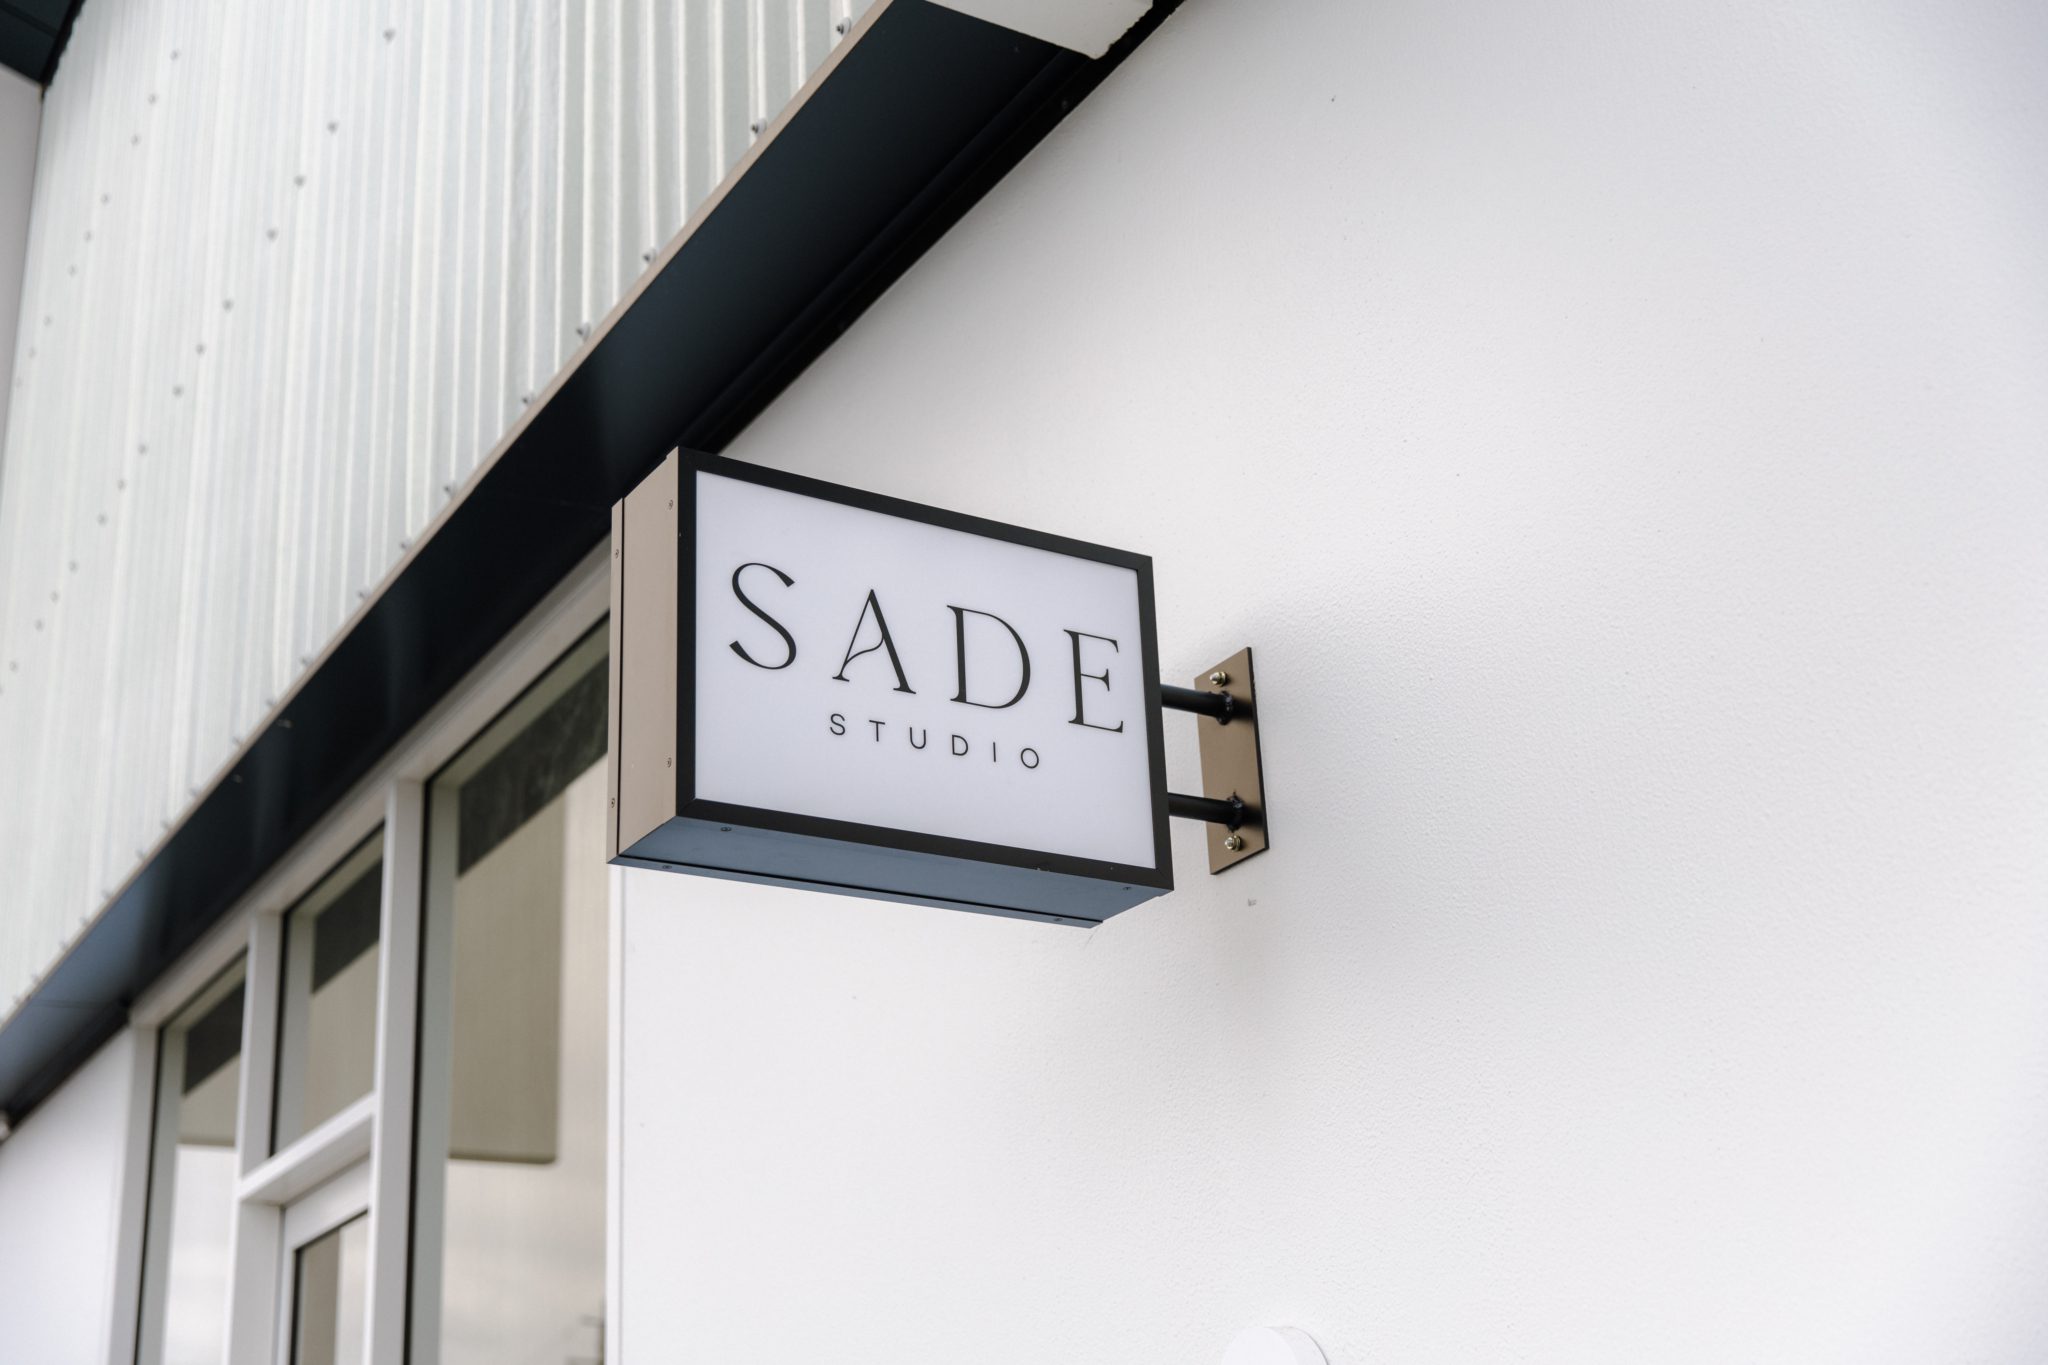 Sade Studio Brisbane – Aesthetic Natural Light Studio